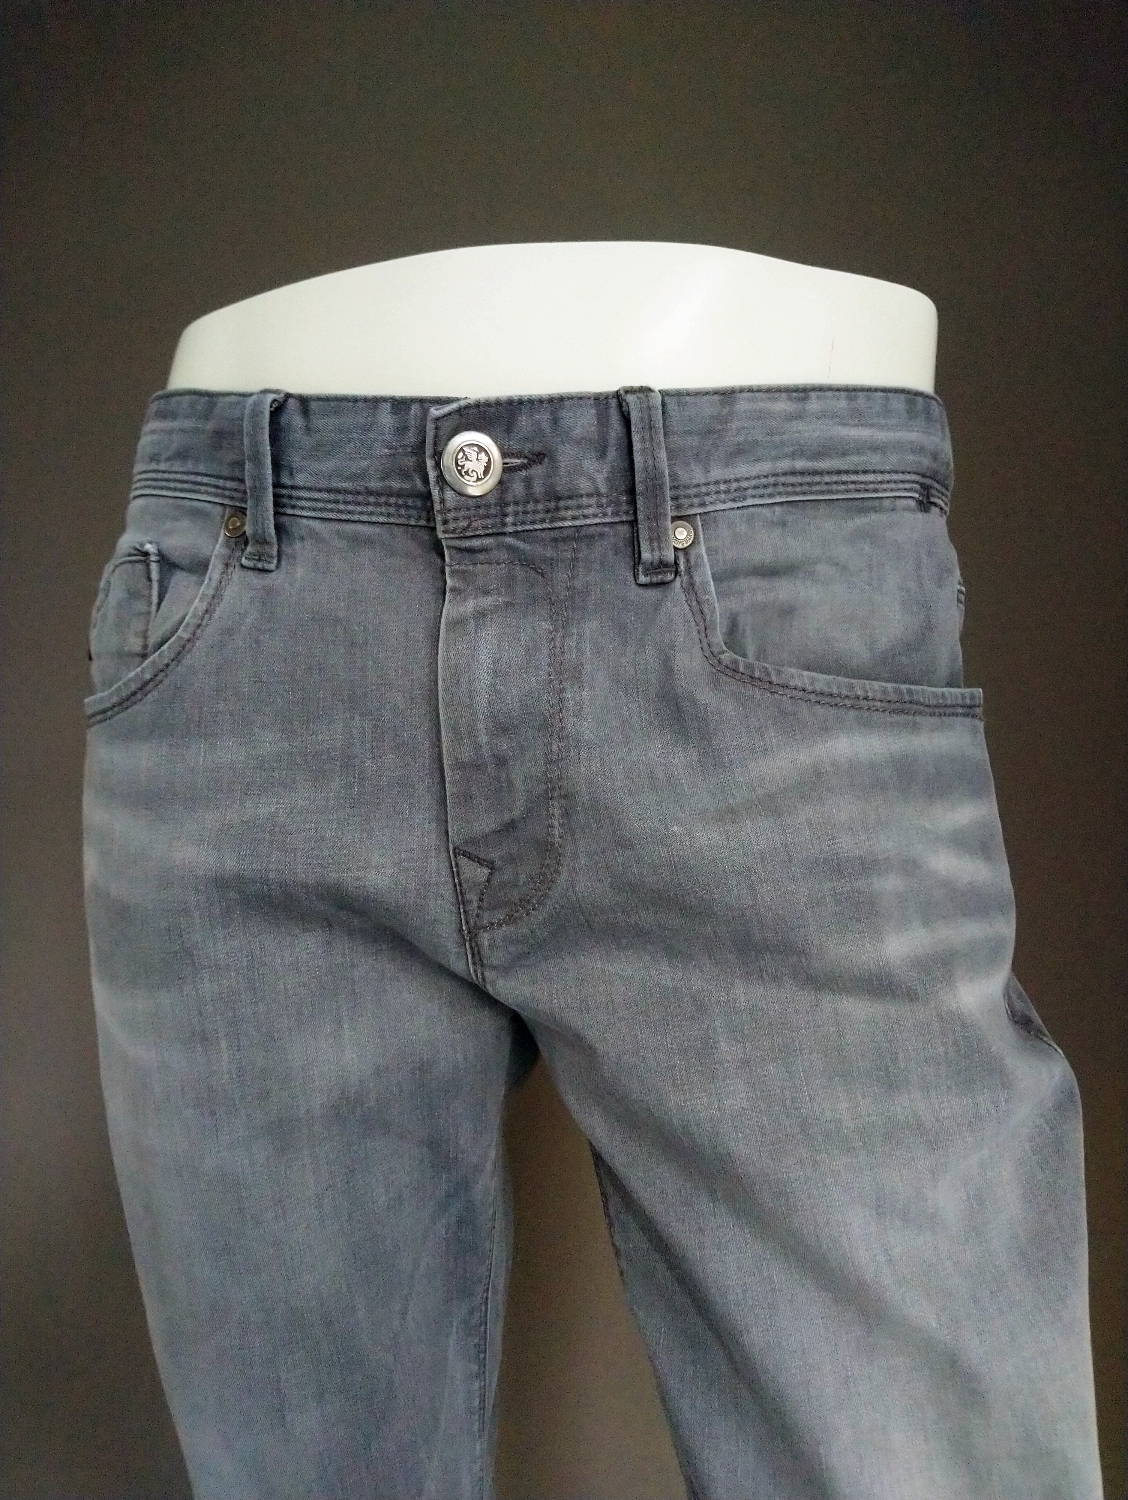 Vanguard jeans. Grijs gekleurd. Maat W33 - L26. (ingekort)